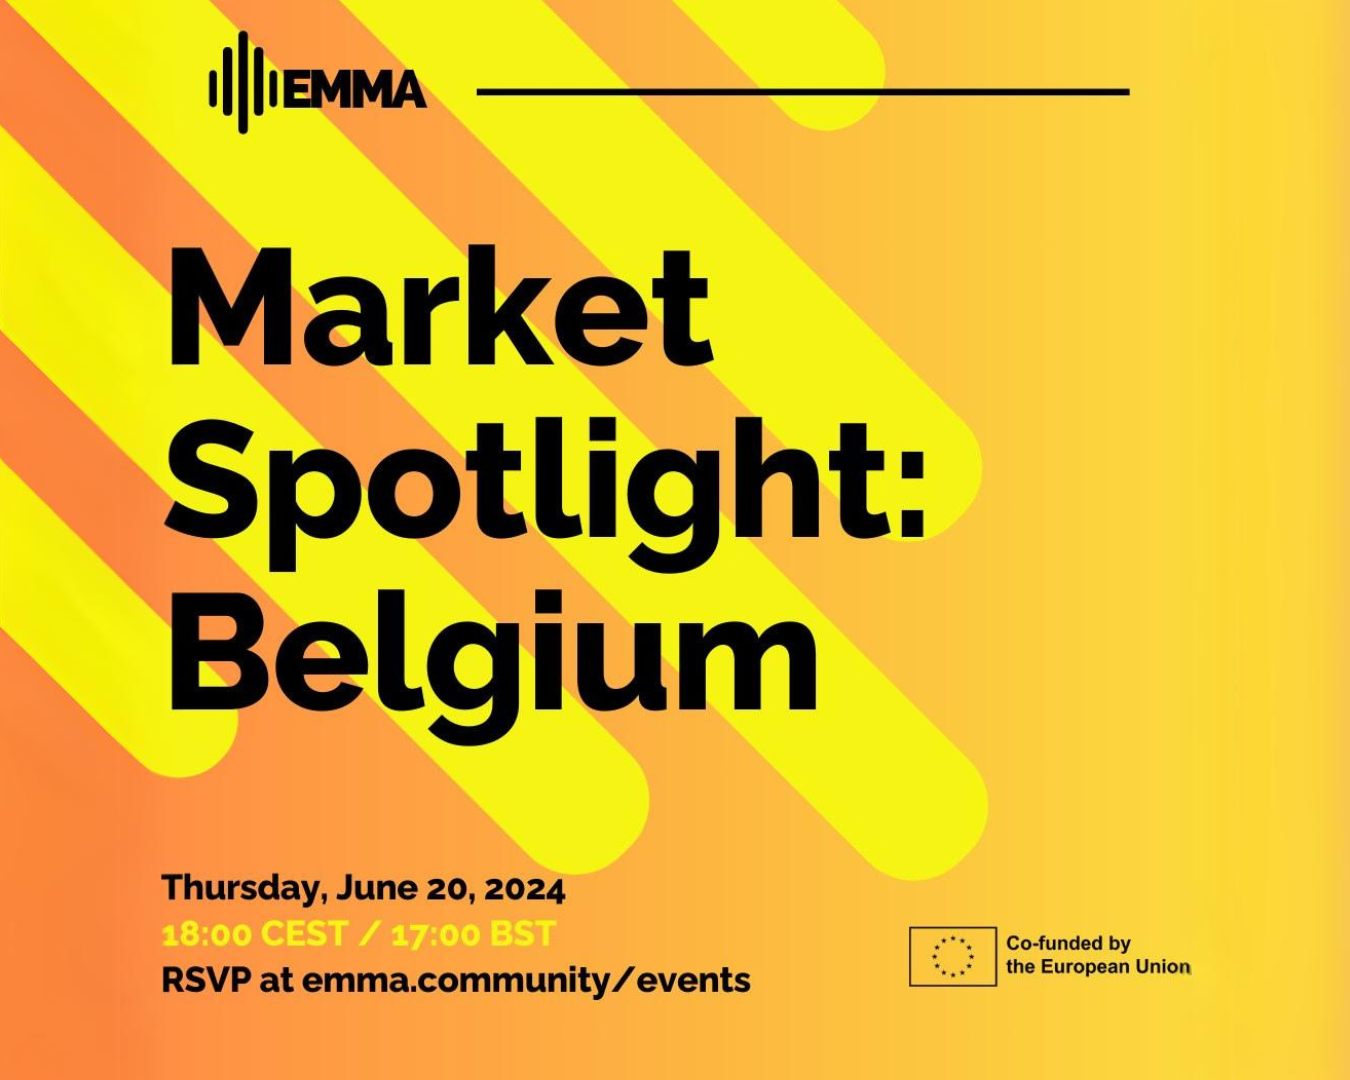 EMMA Market Spotlight: Belgium